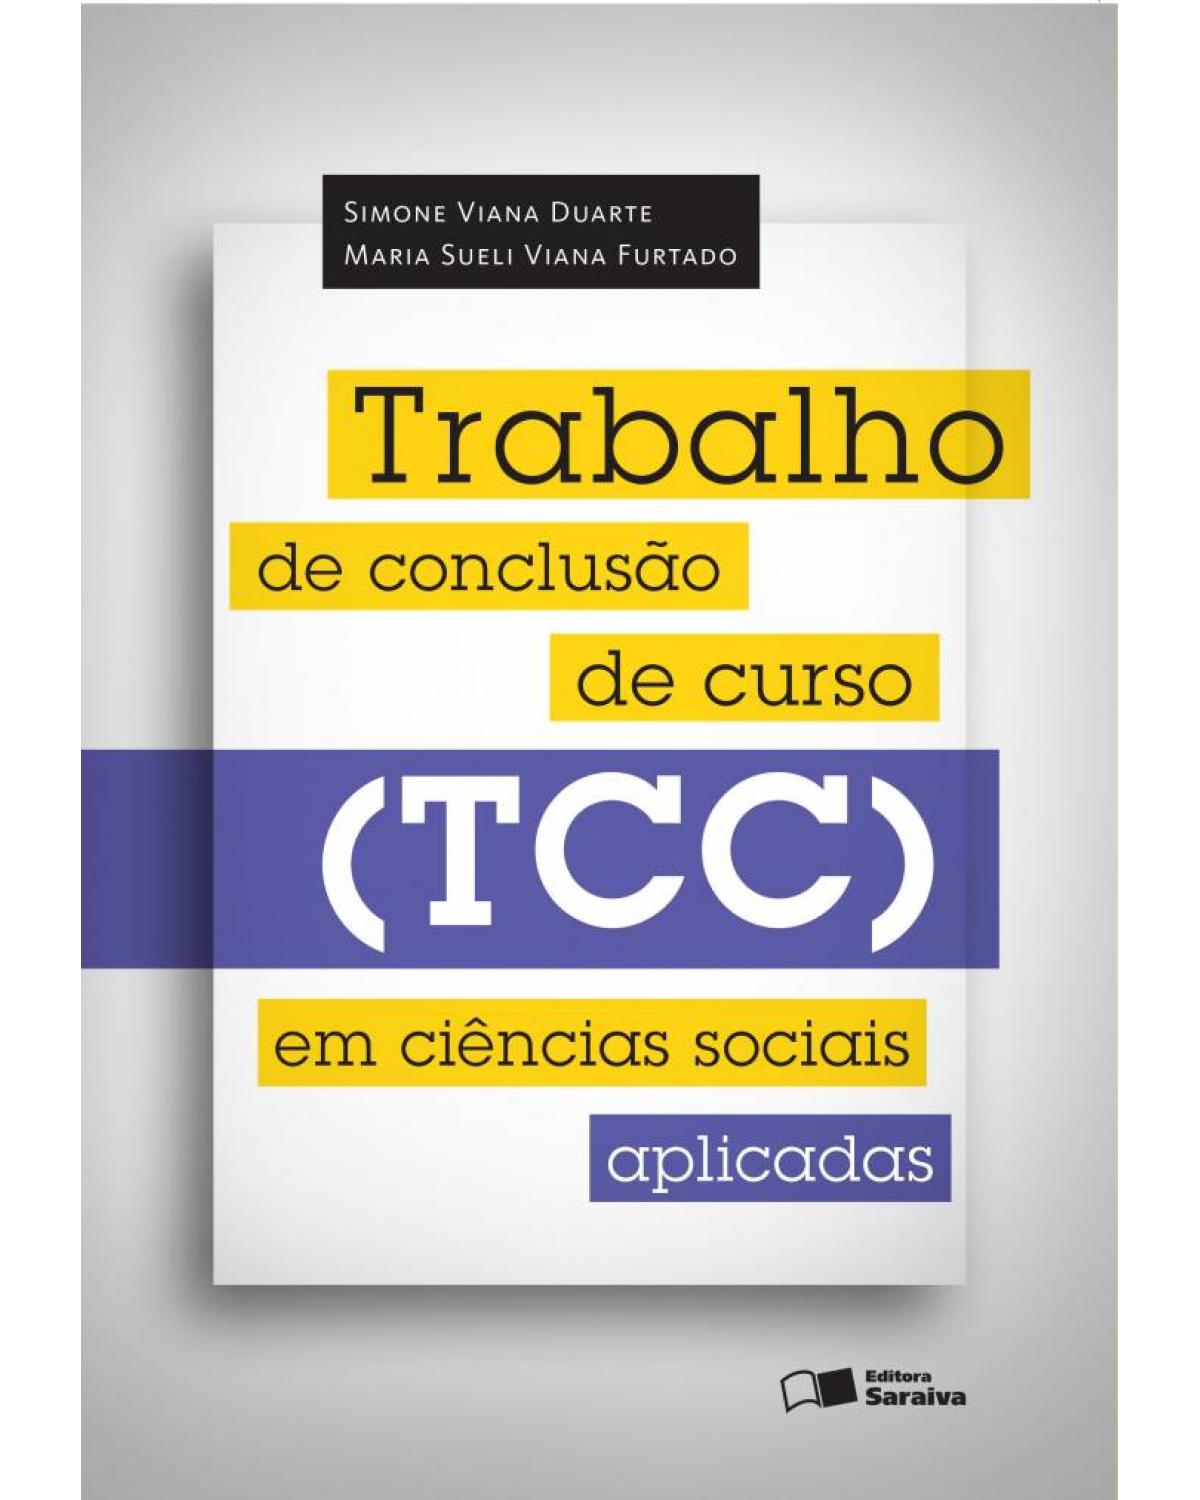 Trabalho de Conclusão de Curso (TCC) em ciências sociais aplicadas - 1ª Edição | 2014